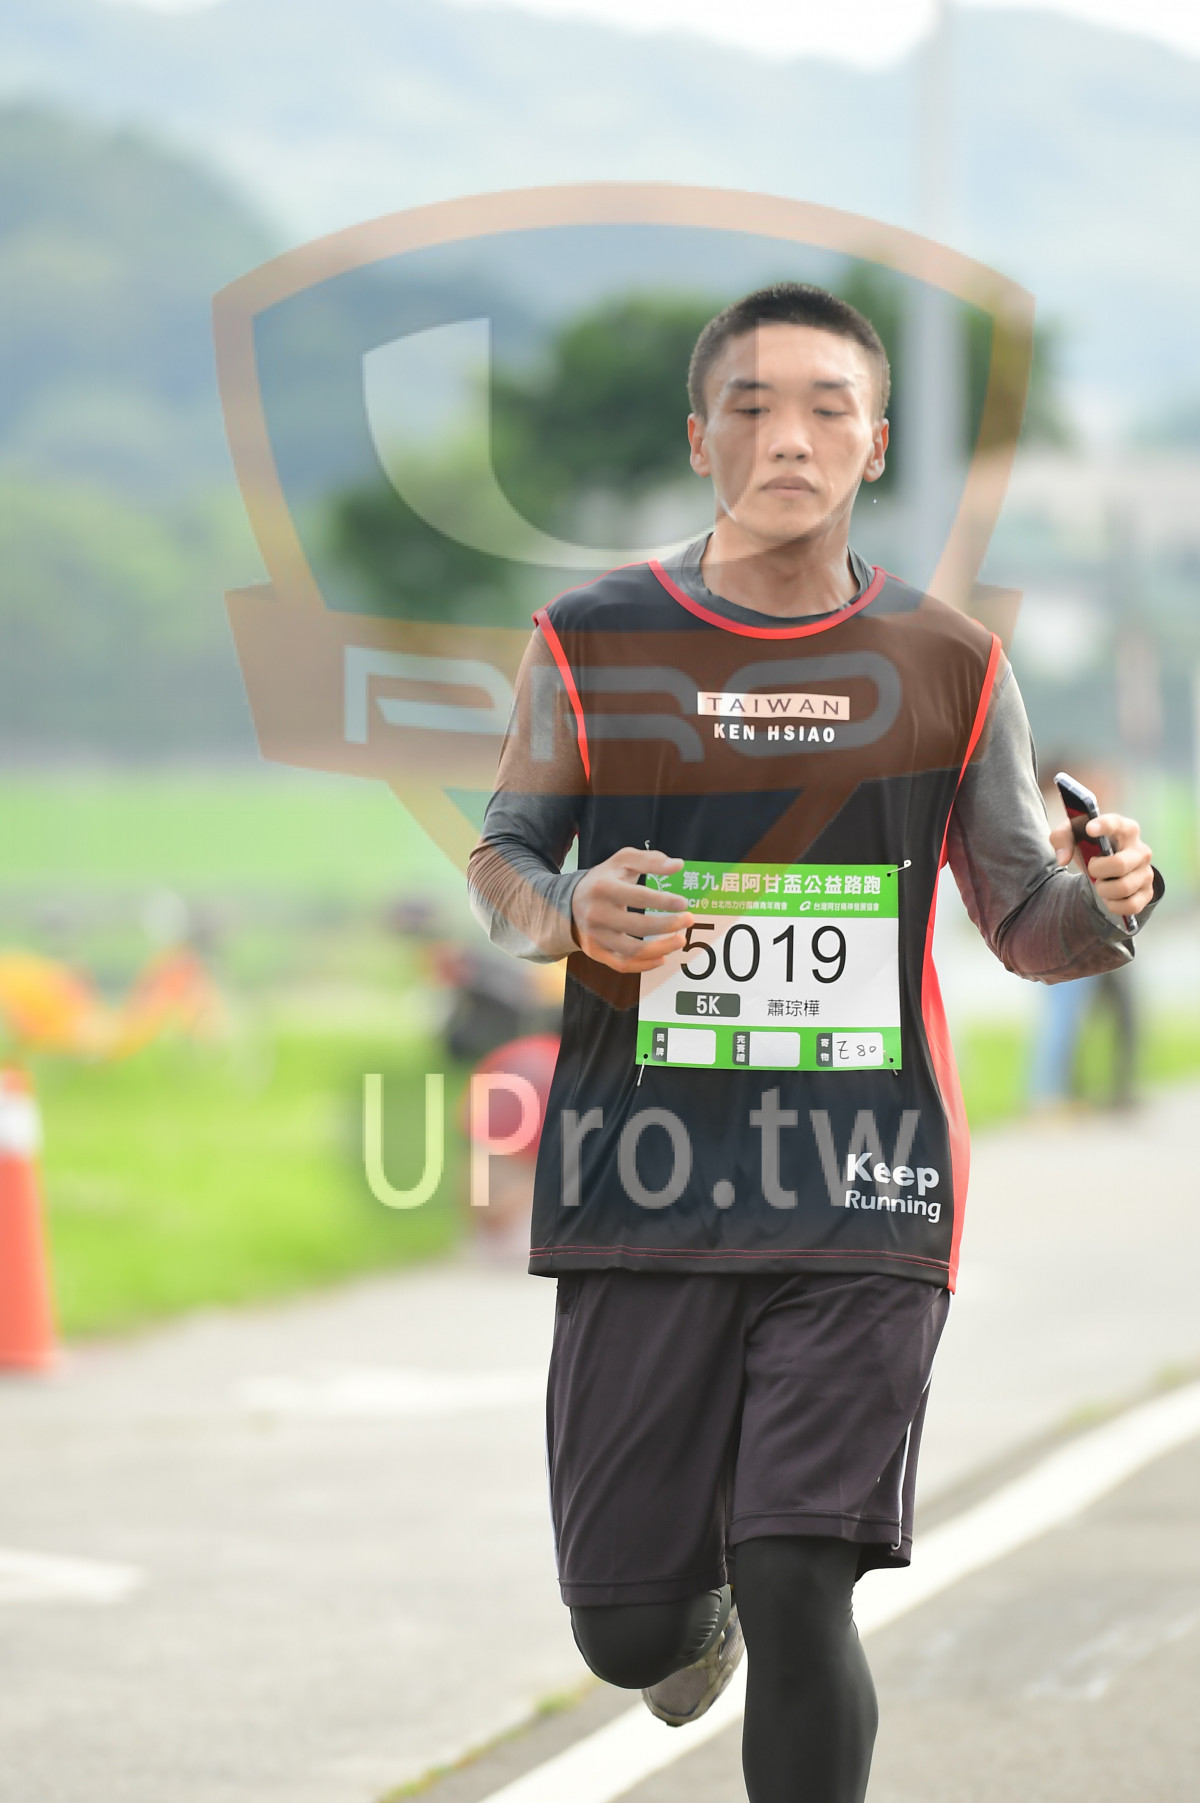 TAIWAN,KEN HSIAO,,5019,5K,,,Keep,Running|終點1|中年人